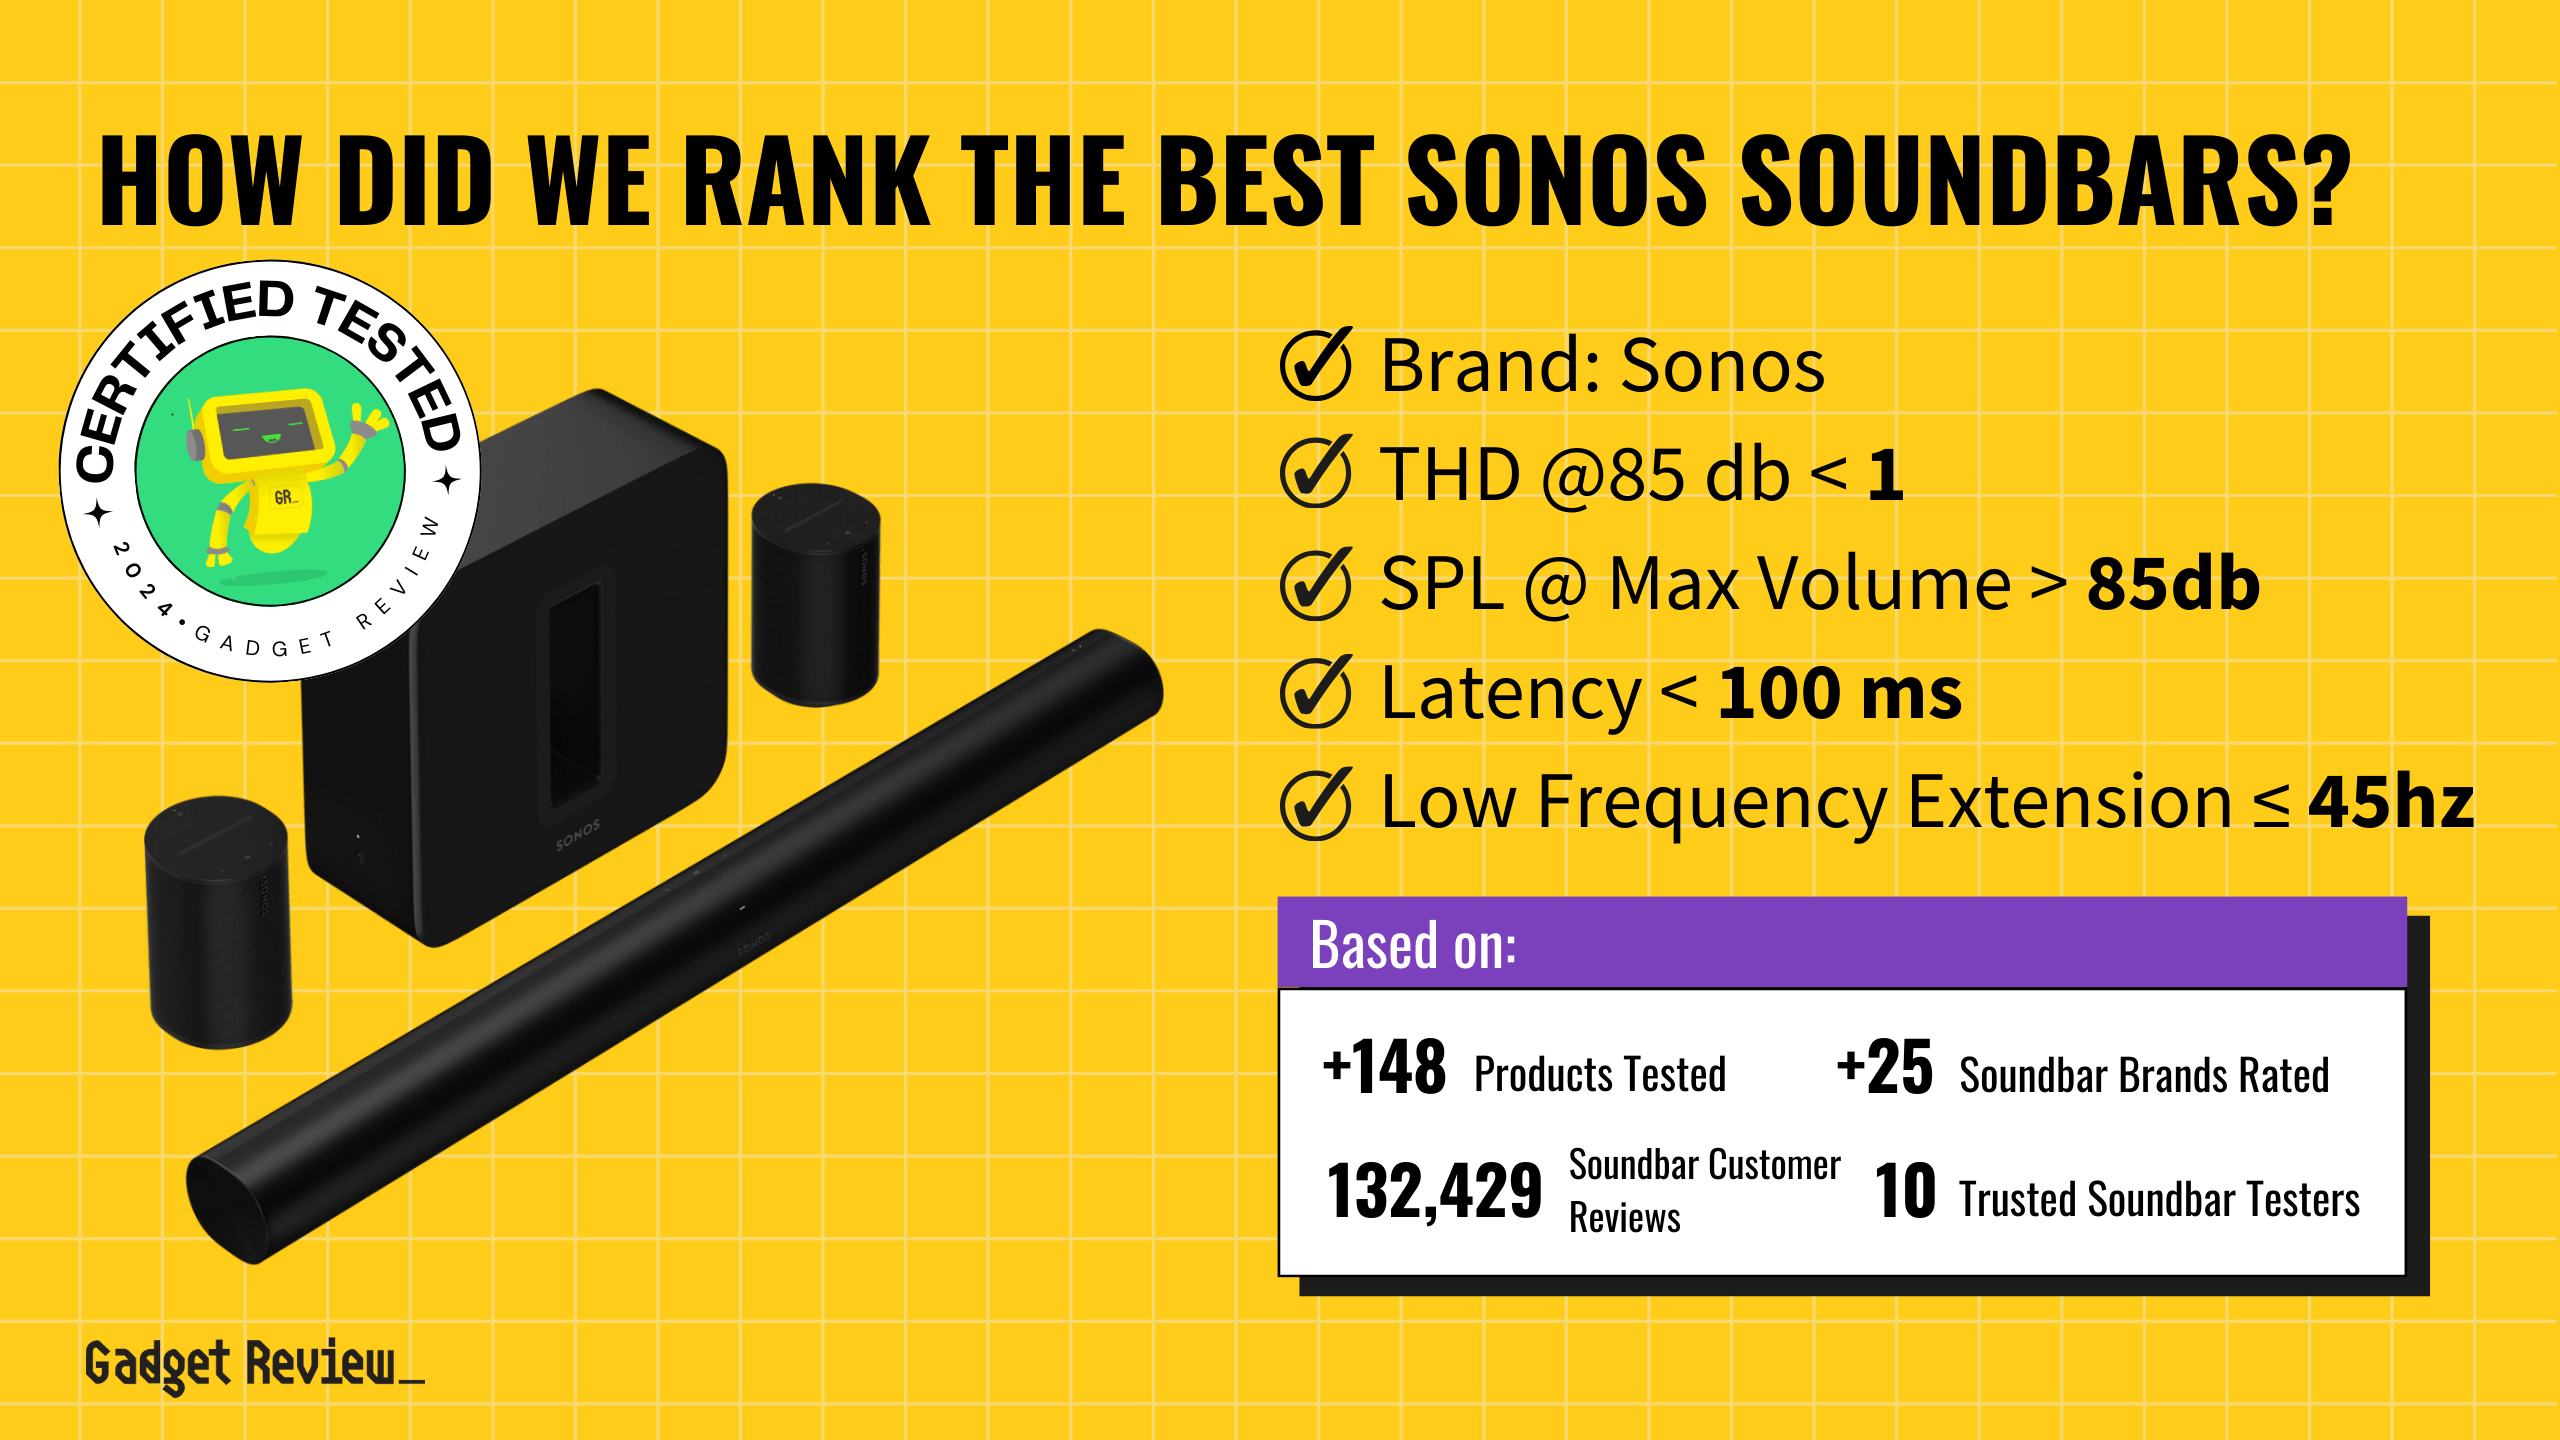 best sonos soundbar guide that shows the top best soundbar model